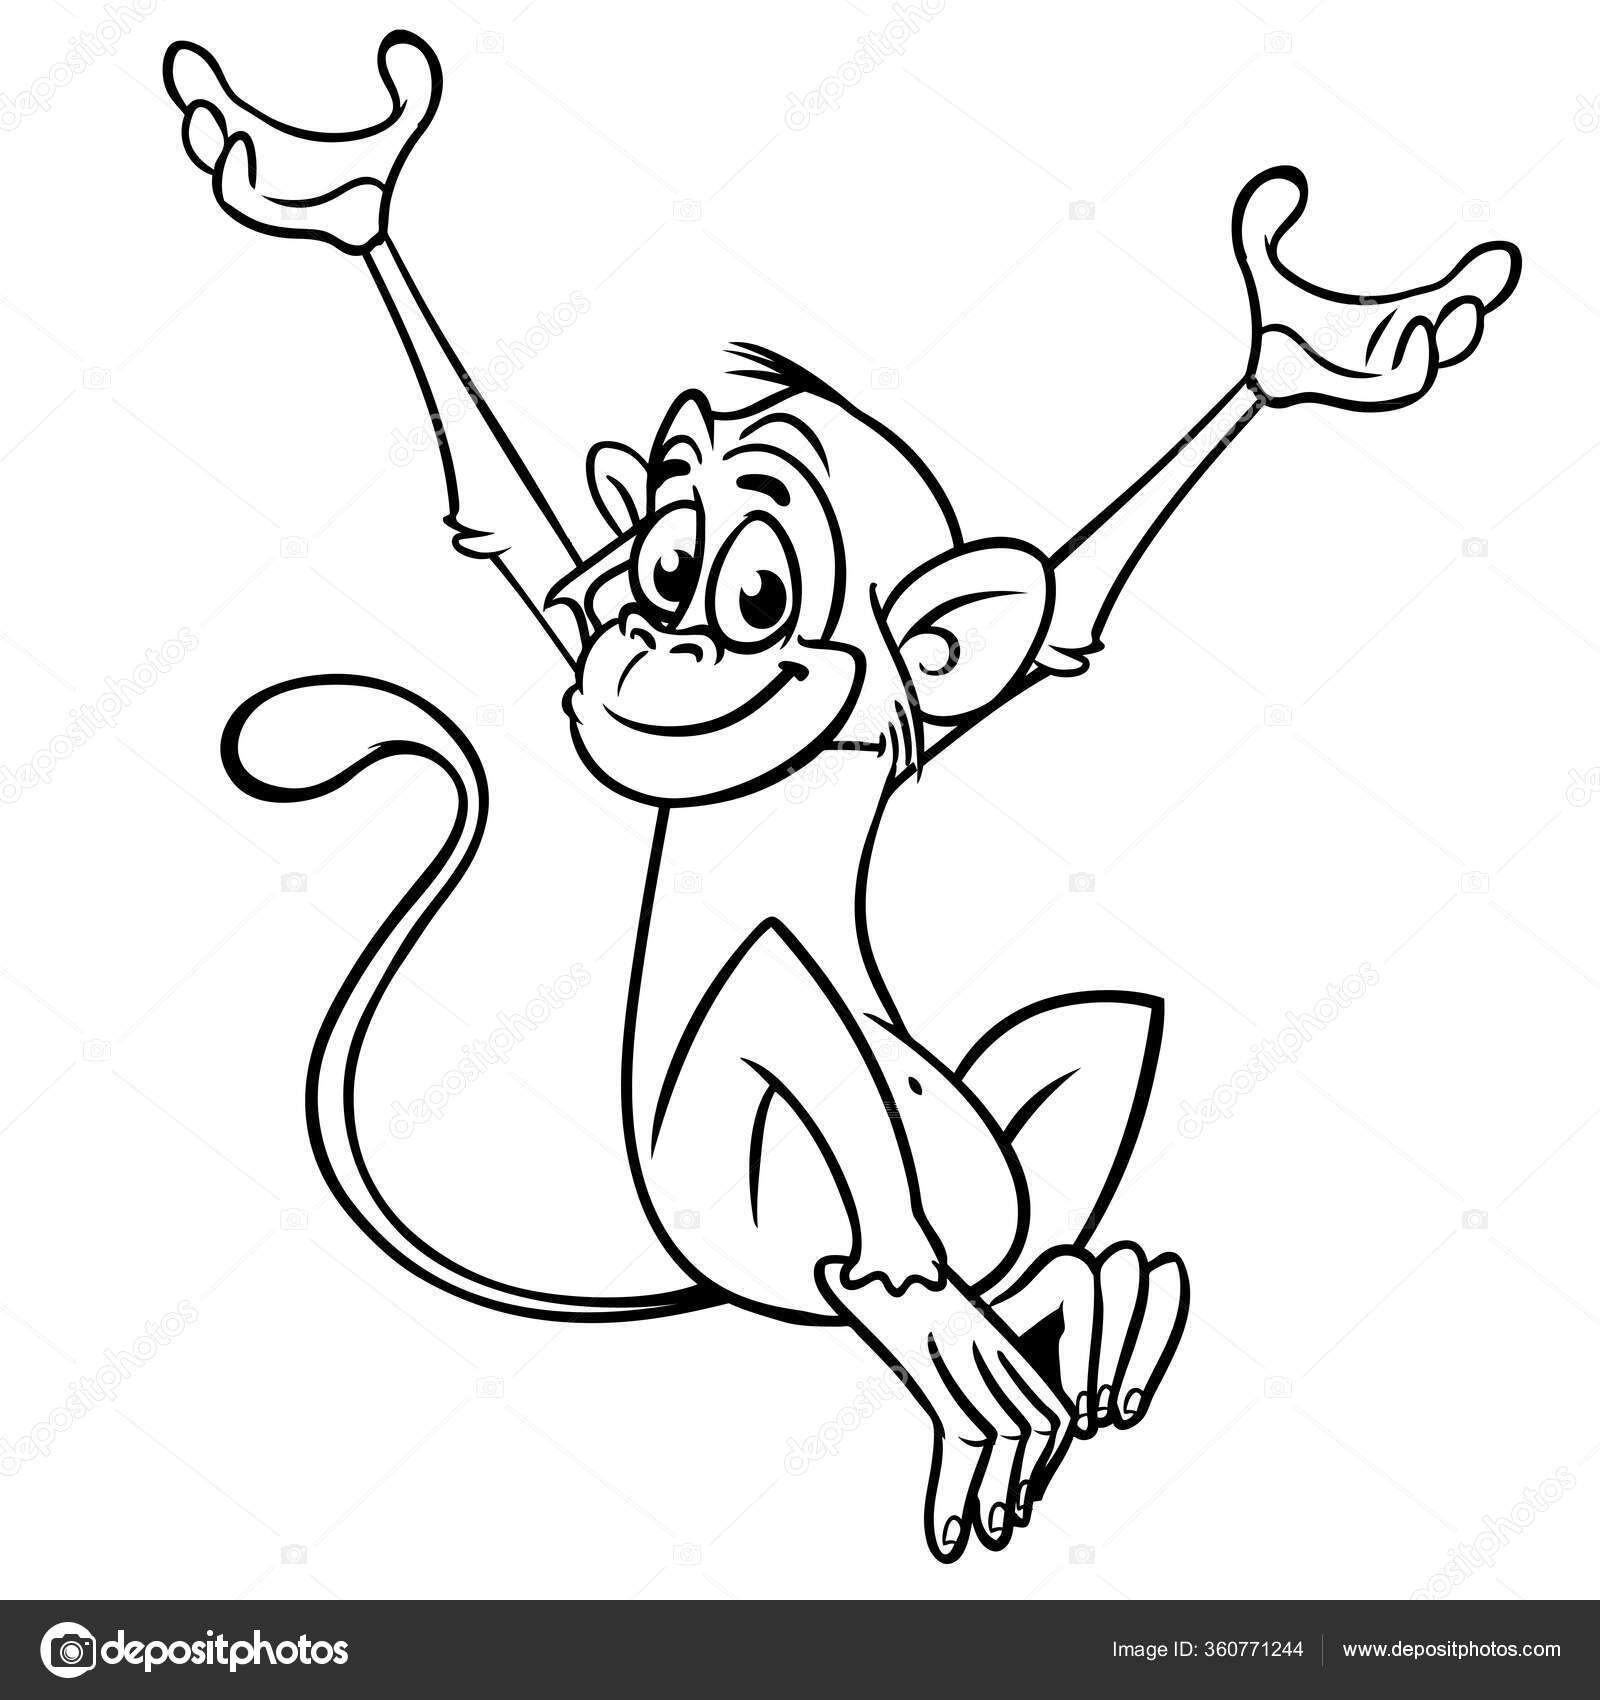 Macaco Clipart Preto E Branco Cartão De Coloração Desenho Lineart Preto E  Branco Bonito Do Macaco